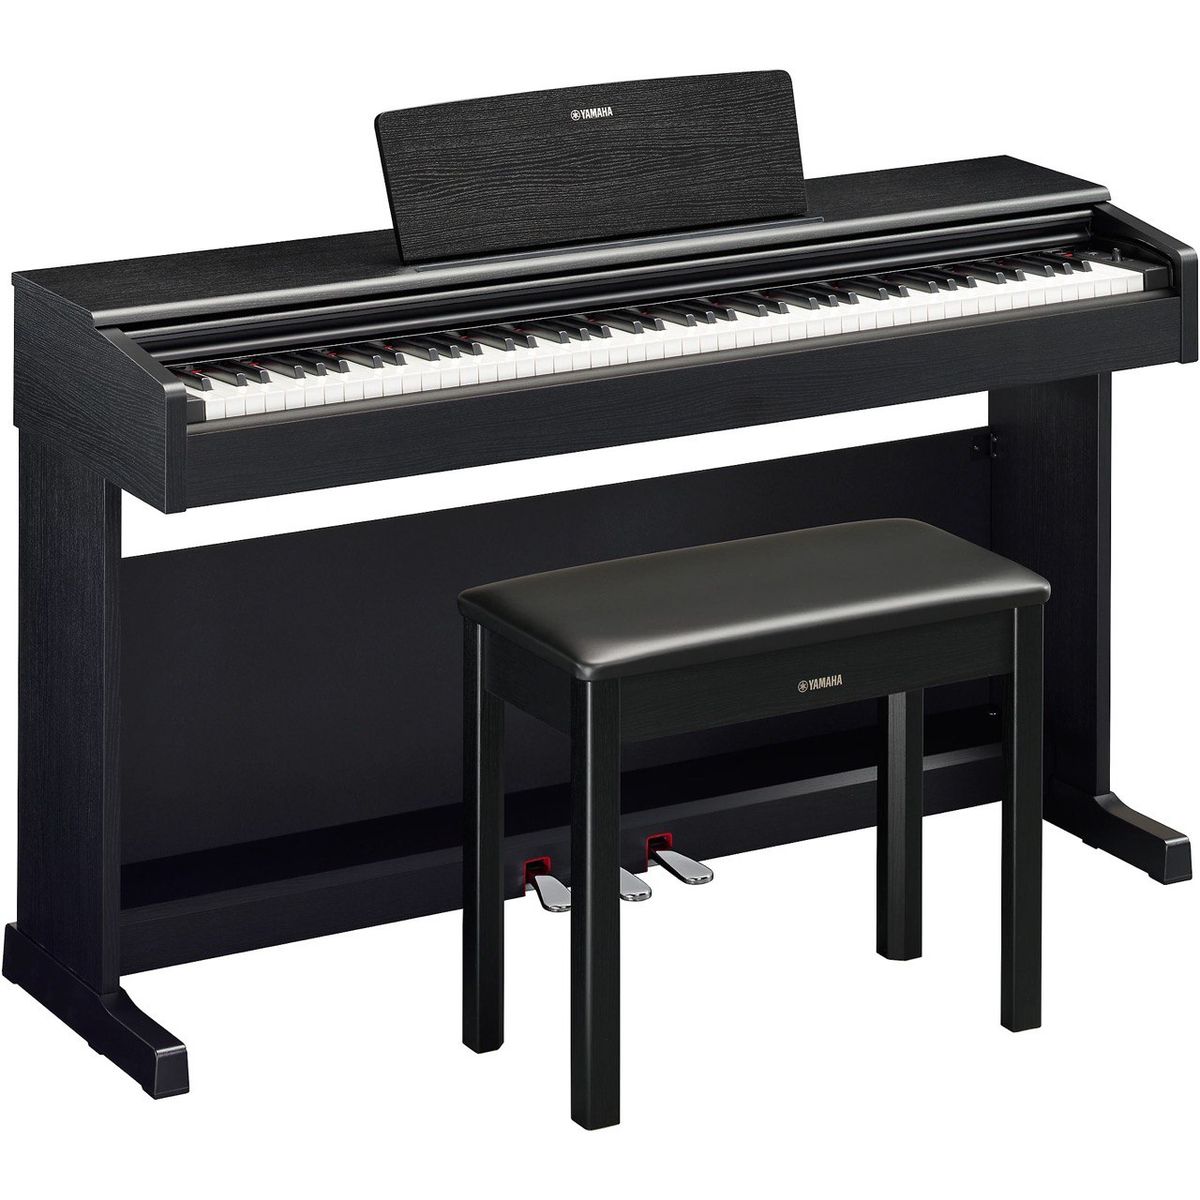 Цифровые пианино Yamaha YDP-145B Arius (банкетка в комплекте) музыкальное пианино утёнок 10 клавиш работает от батареек